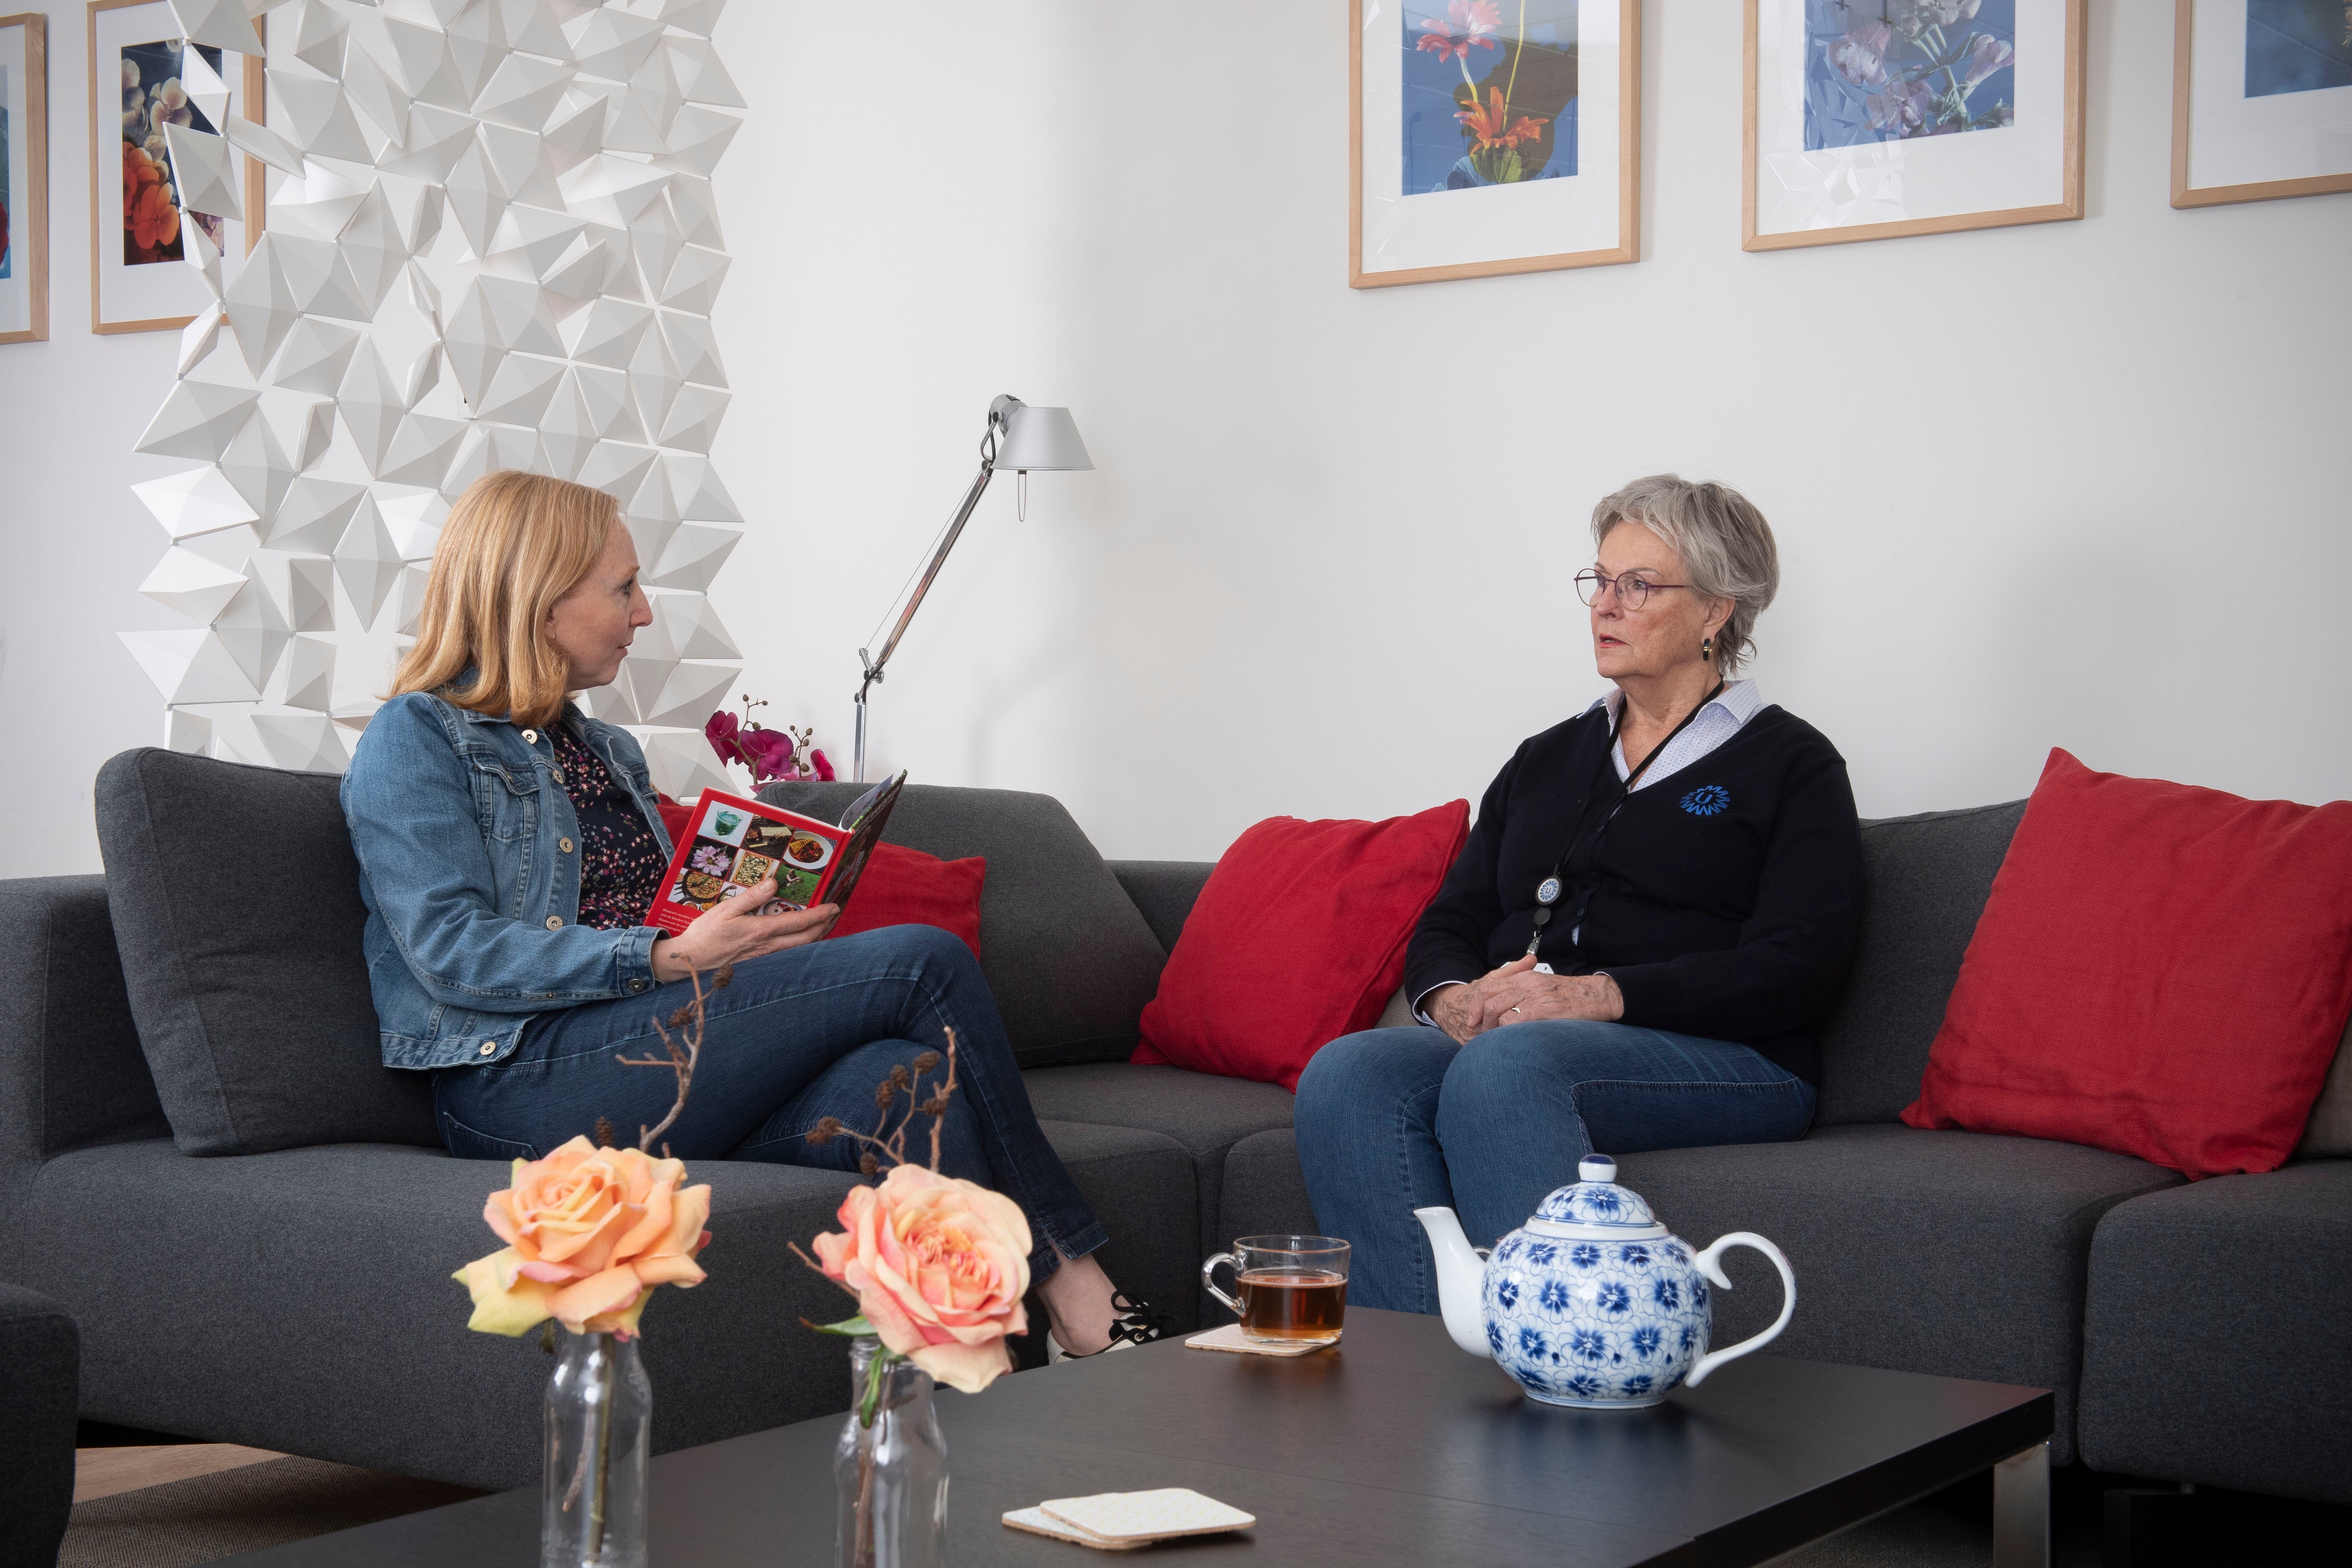 Twee vrouwen in gesprek in een gastenverblijf